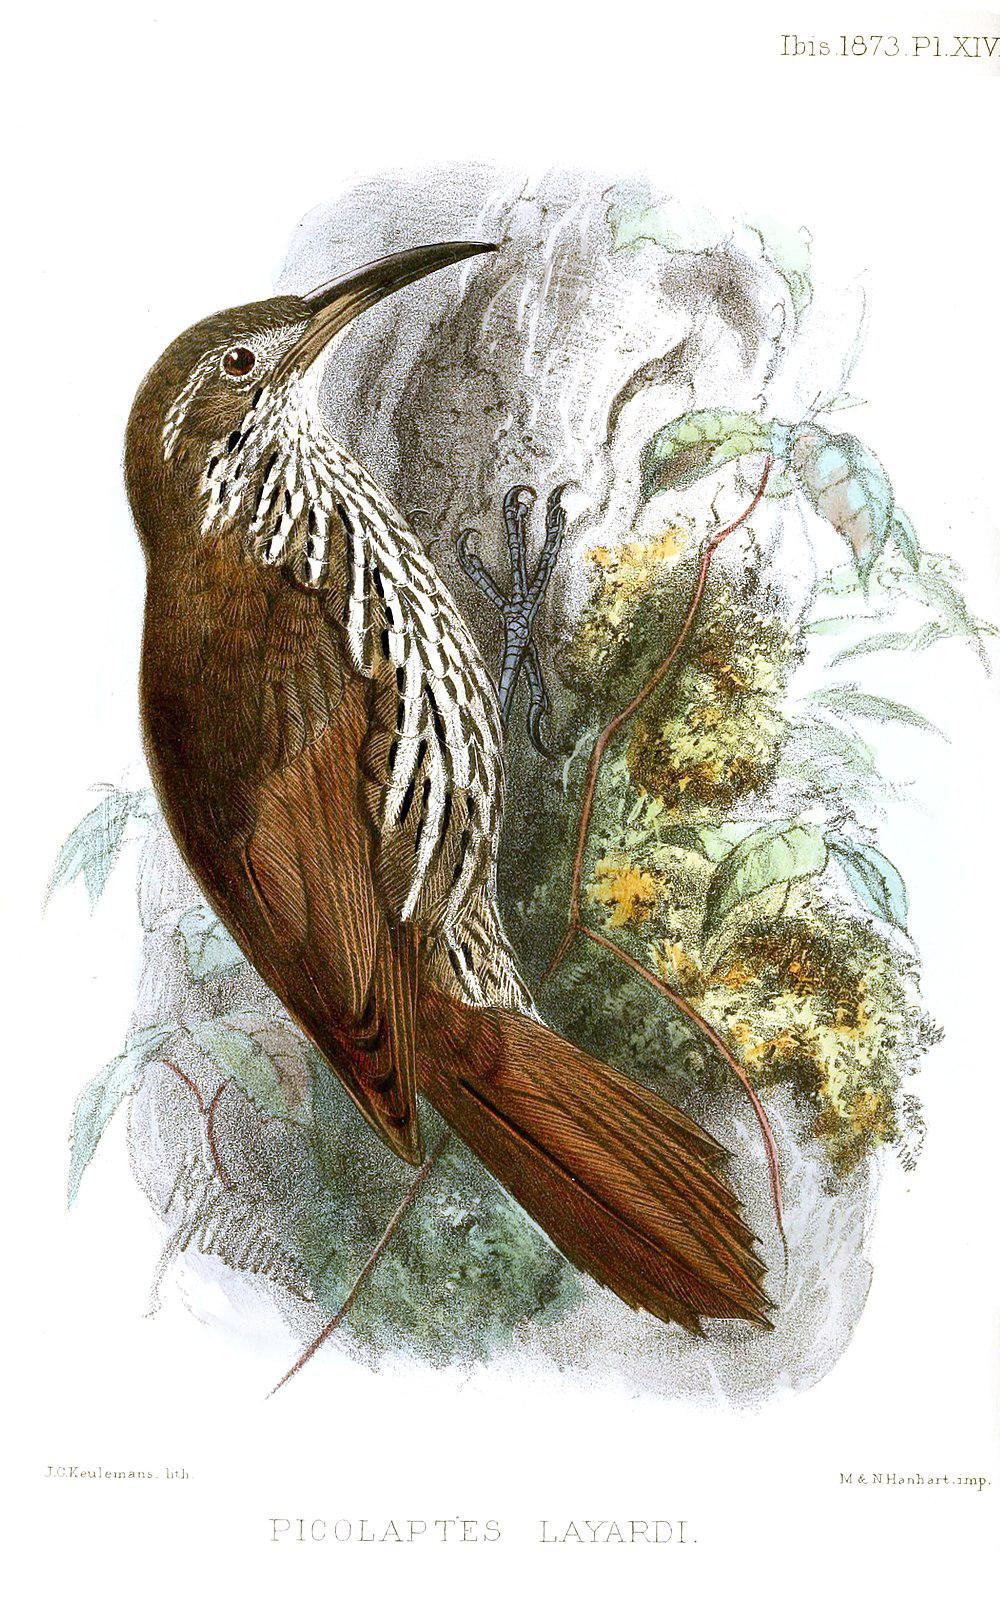 线纹䴕雀 / Guianan Woodcreeper / Lepidocolaptes albolineatus